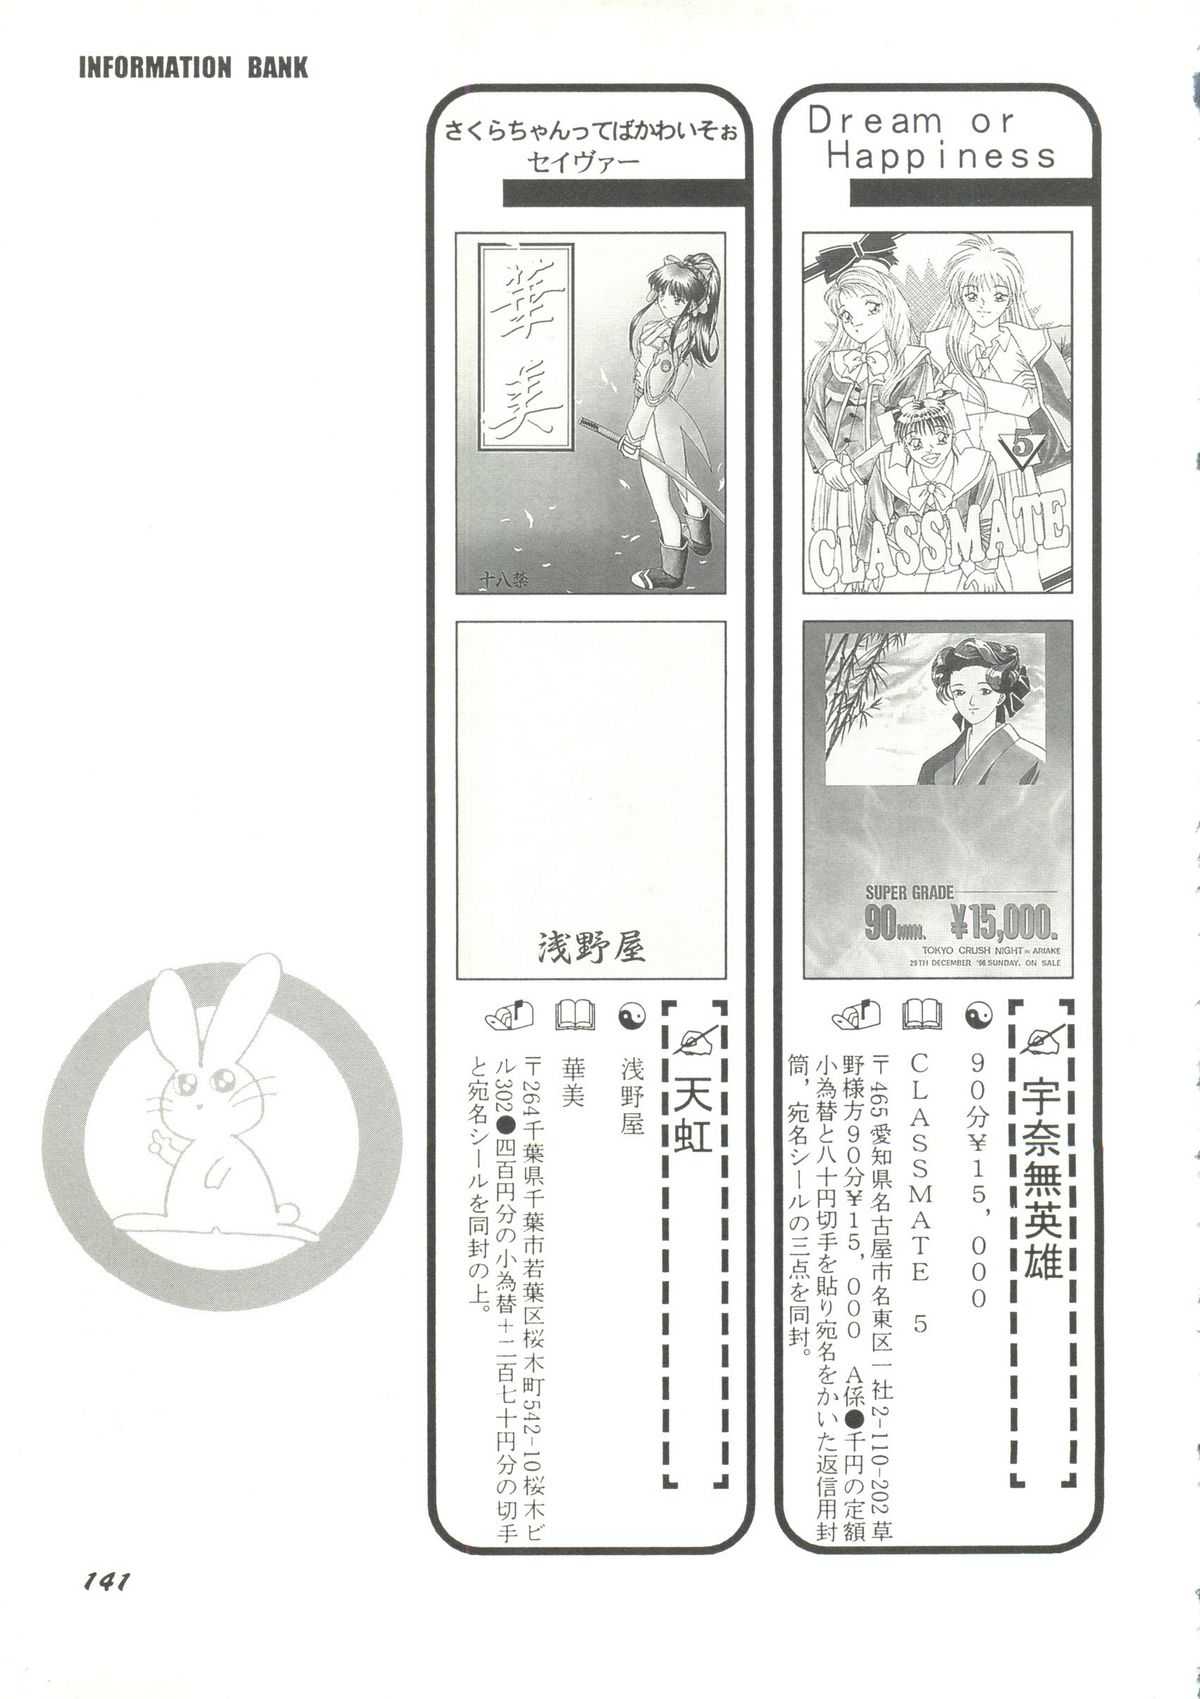 [doujinshi anthology] Game Miki 9 (Sakura Wars and others) 